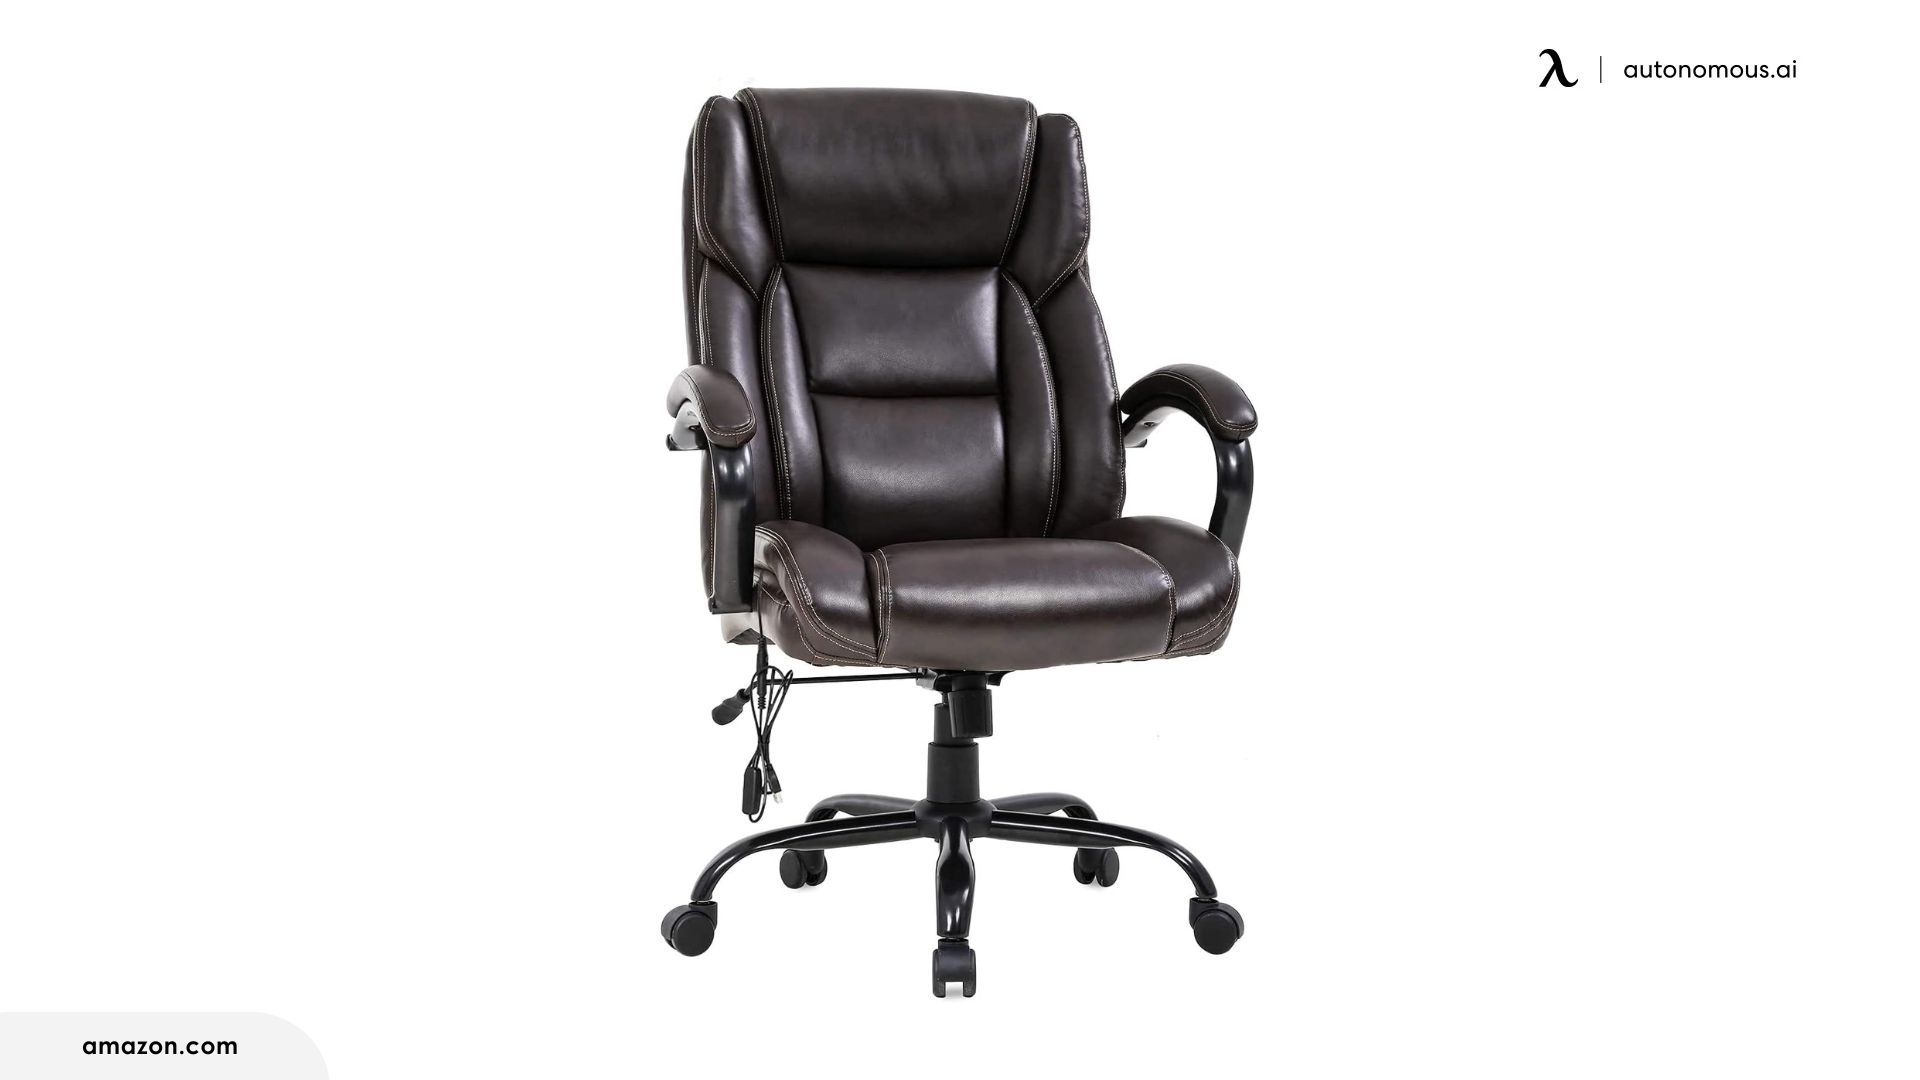 KADIRYA 500 lb High Back Bonded Leather Executive Office Chair